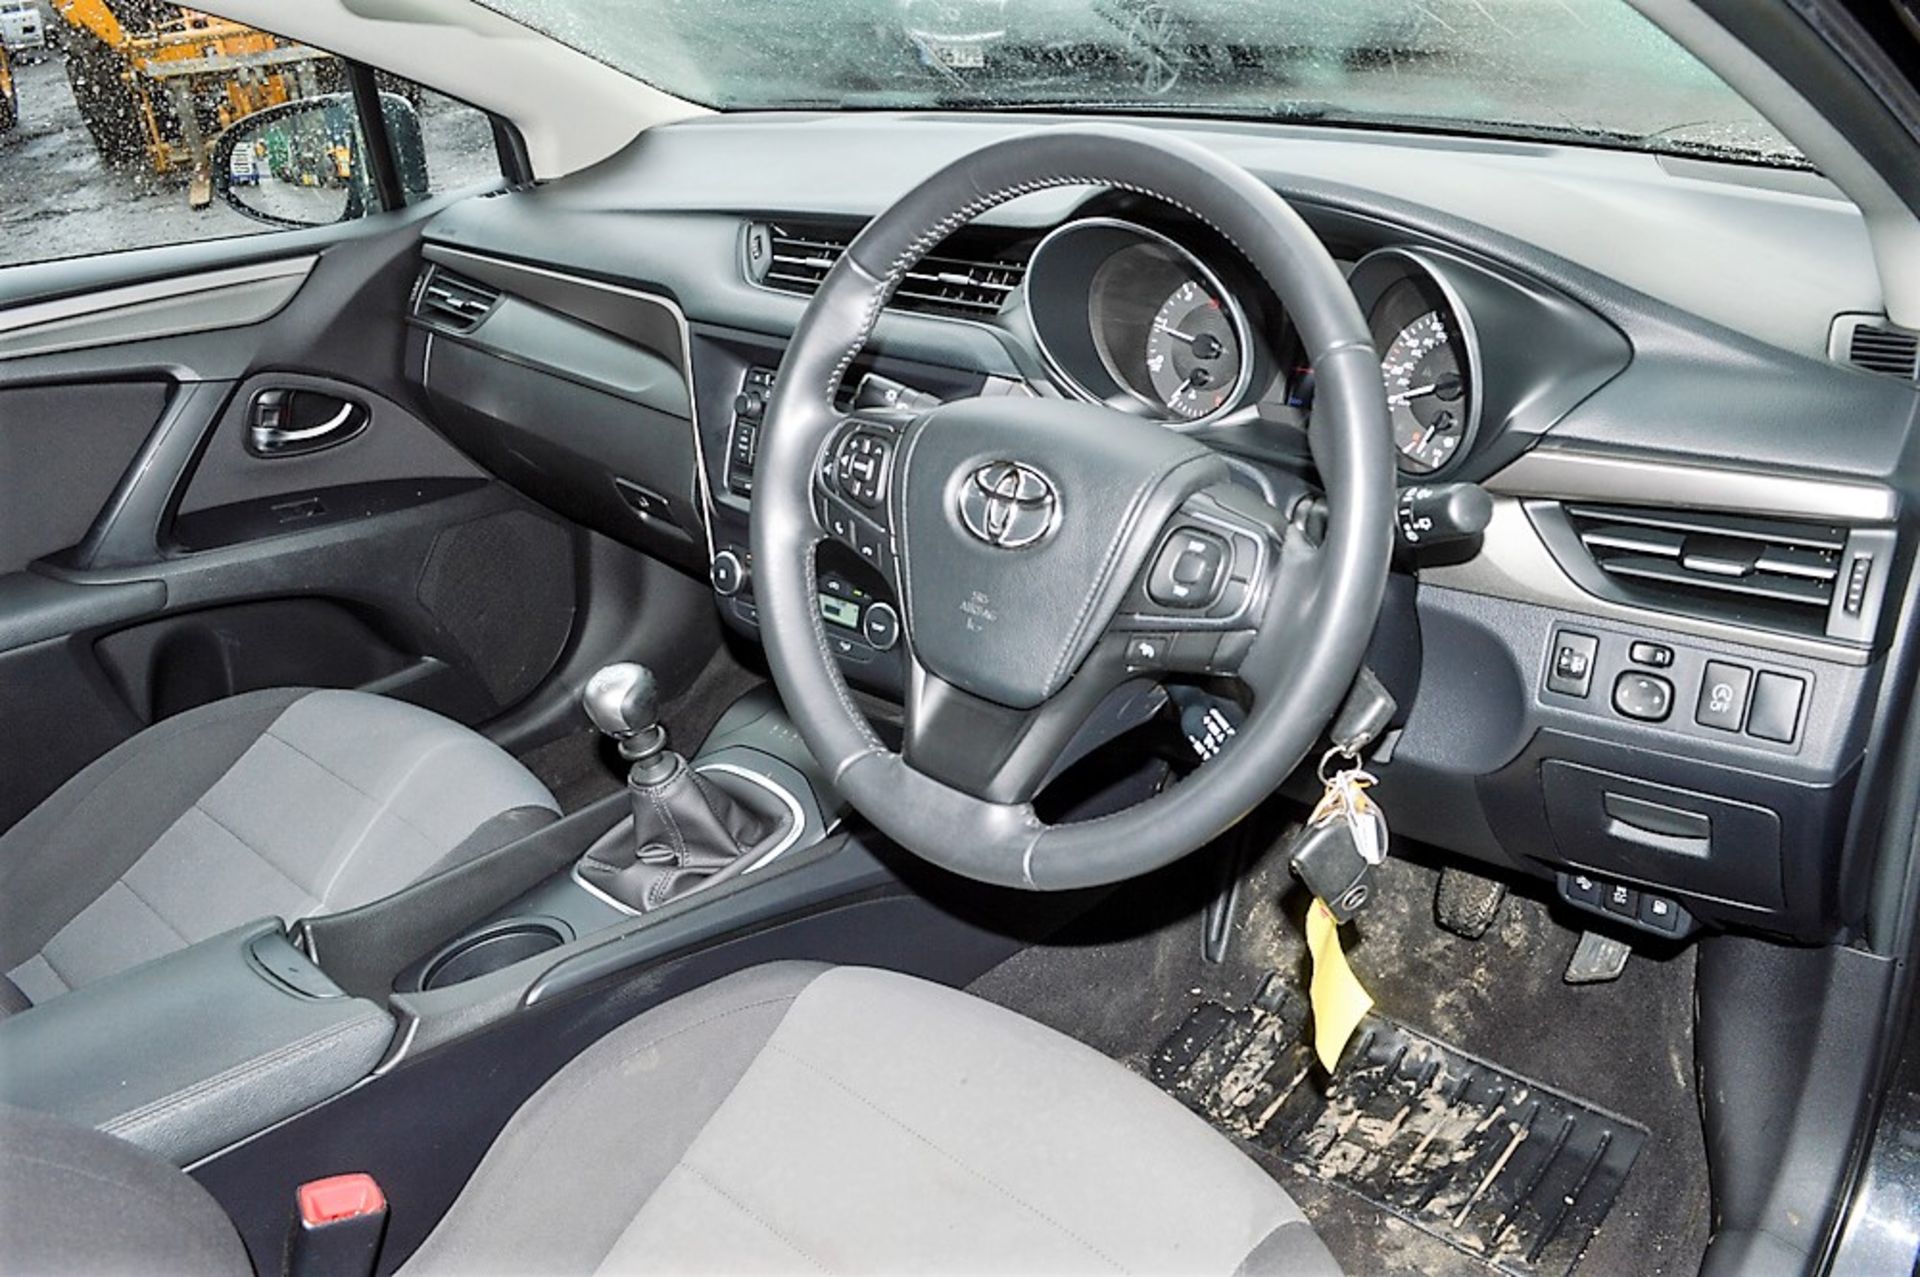 Toyota Avensis Active D-4D 5 door estate car   Registration number: MM65 SFY Date of Registration: - Image 7 of 10